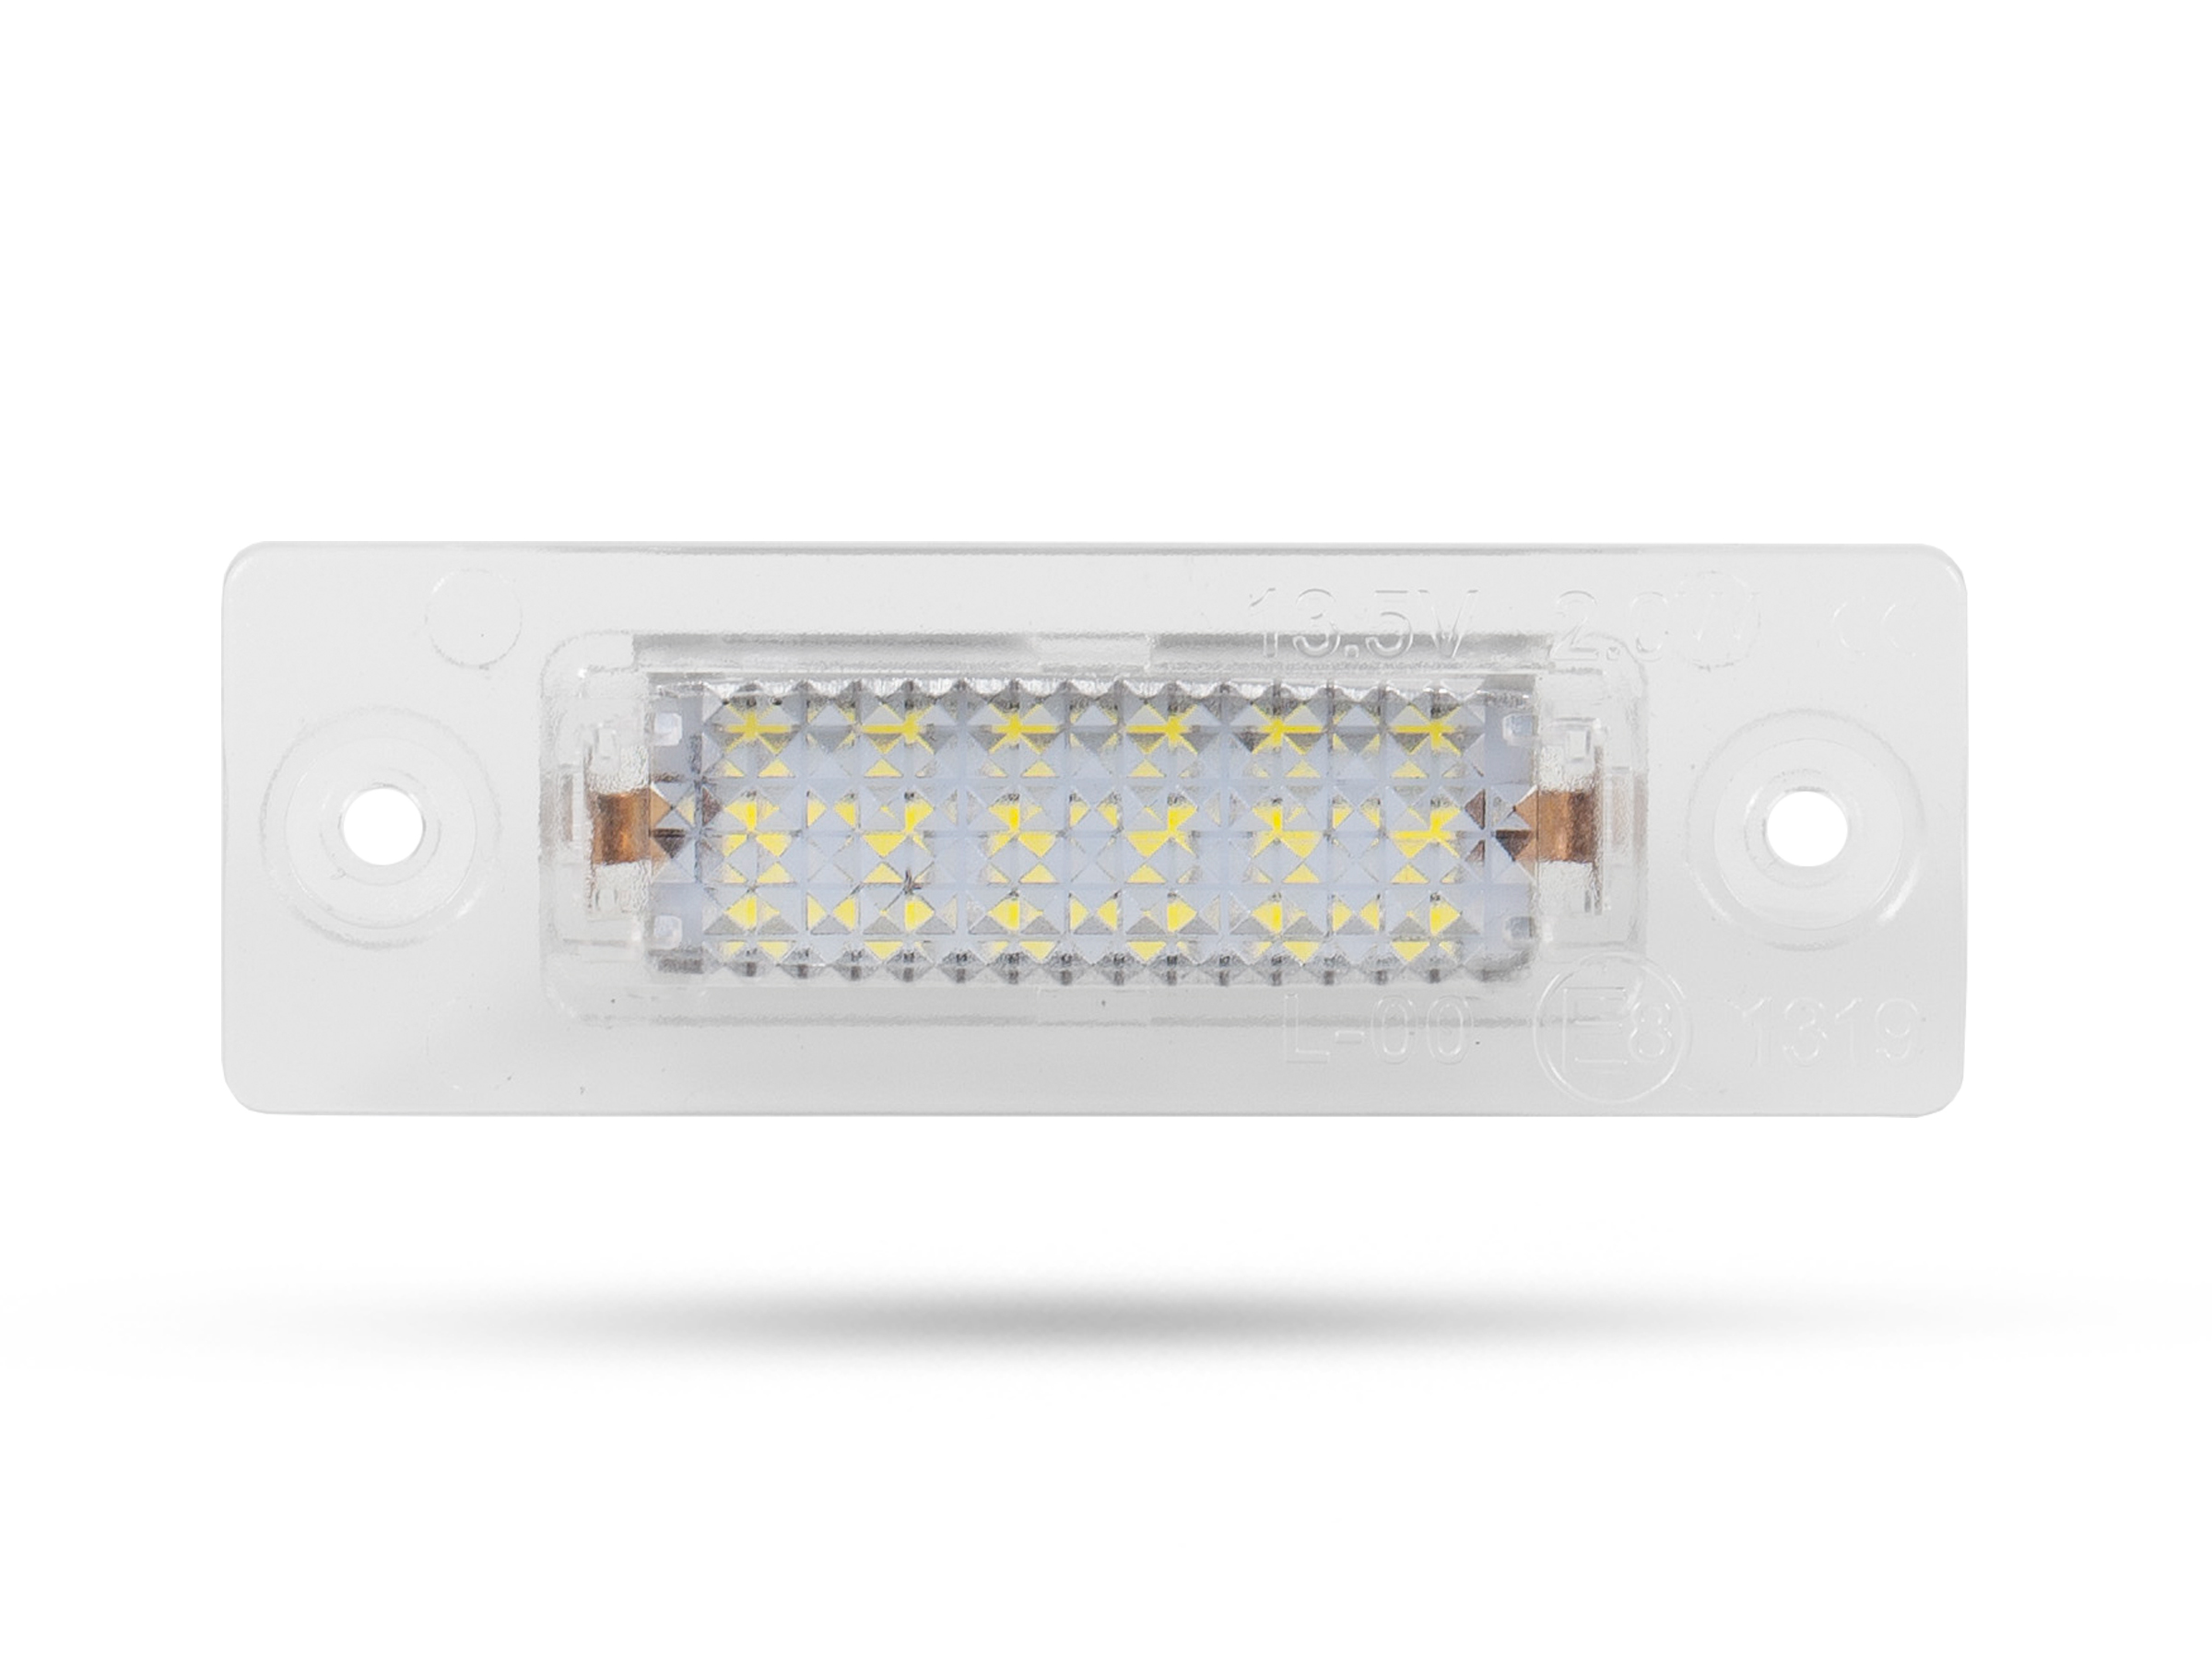 LED Kennzeichenbeleuchtung Module VW T5, mit E-Prüfzeichen, LED  Kennzeichenbeleuchtung für VW, LED Kennzeichenbeleuchtung